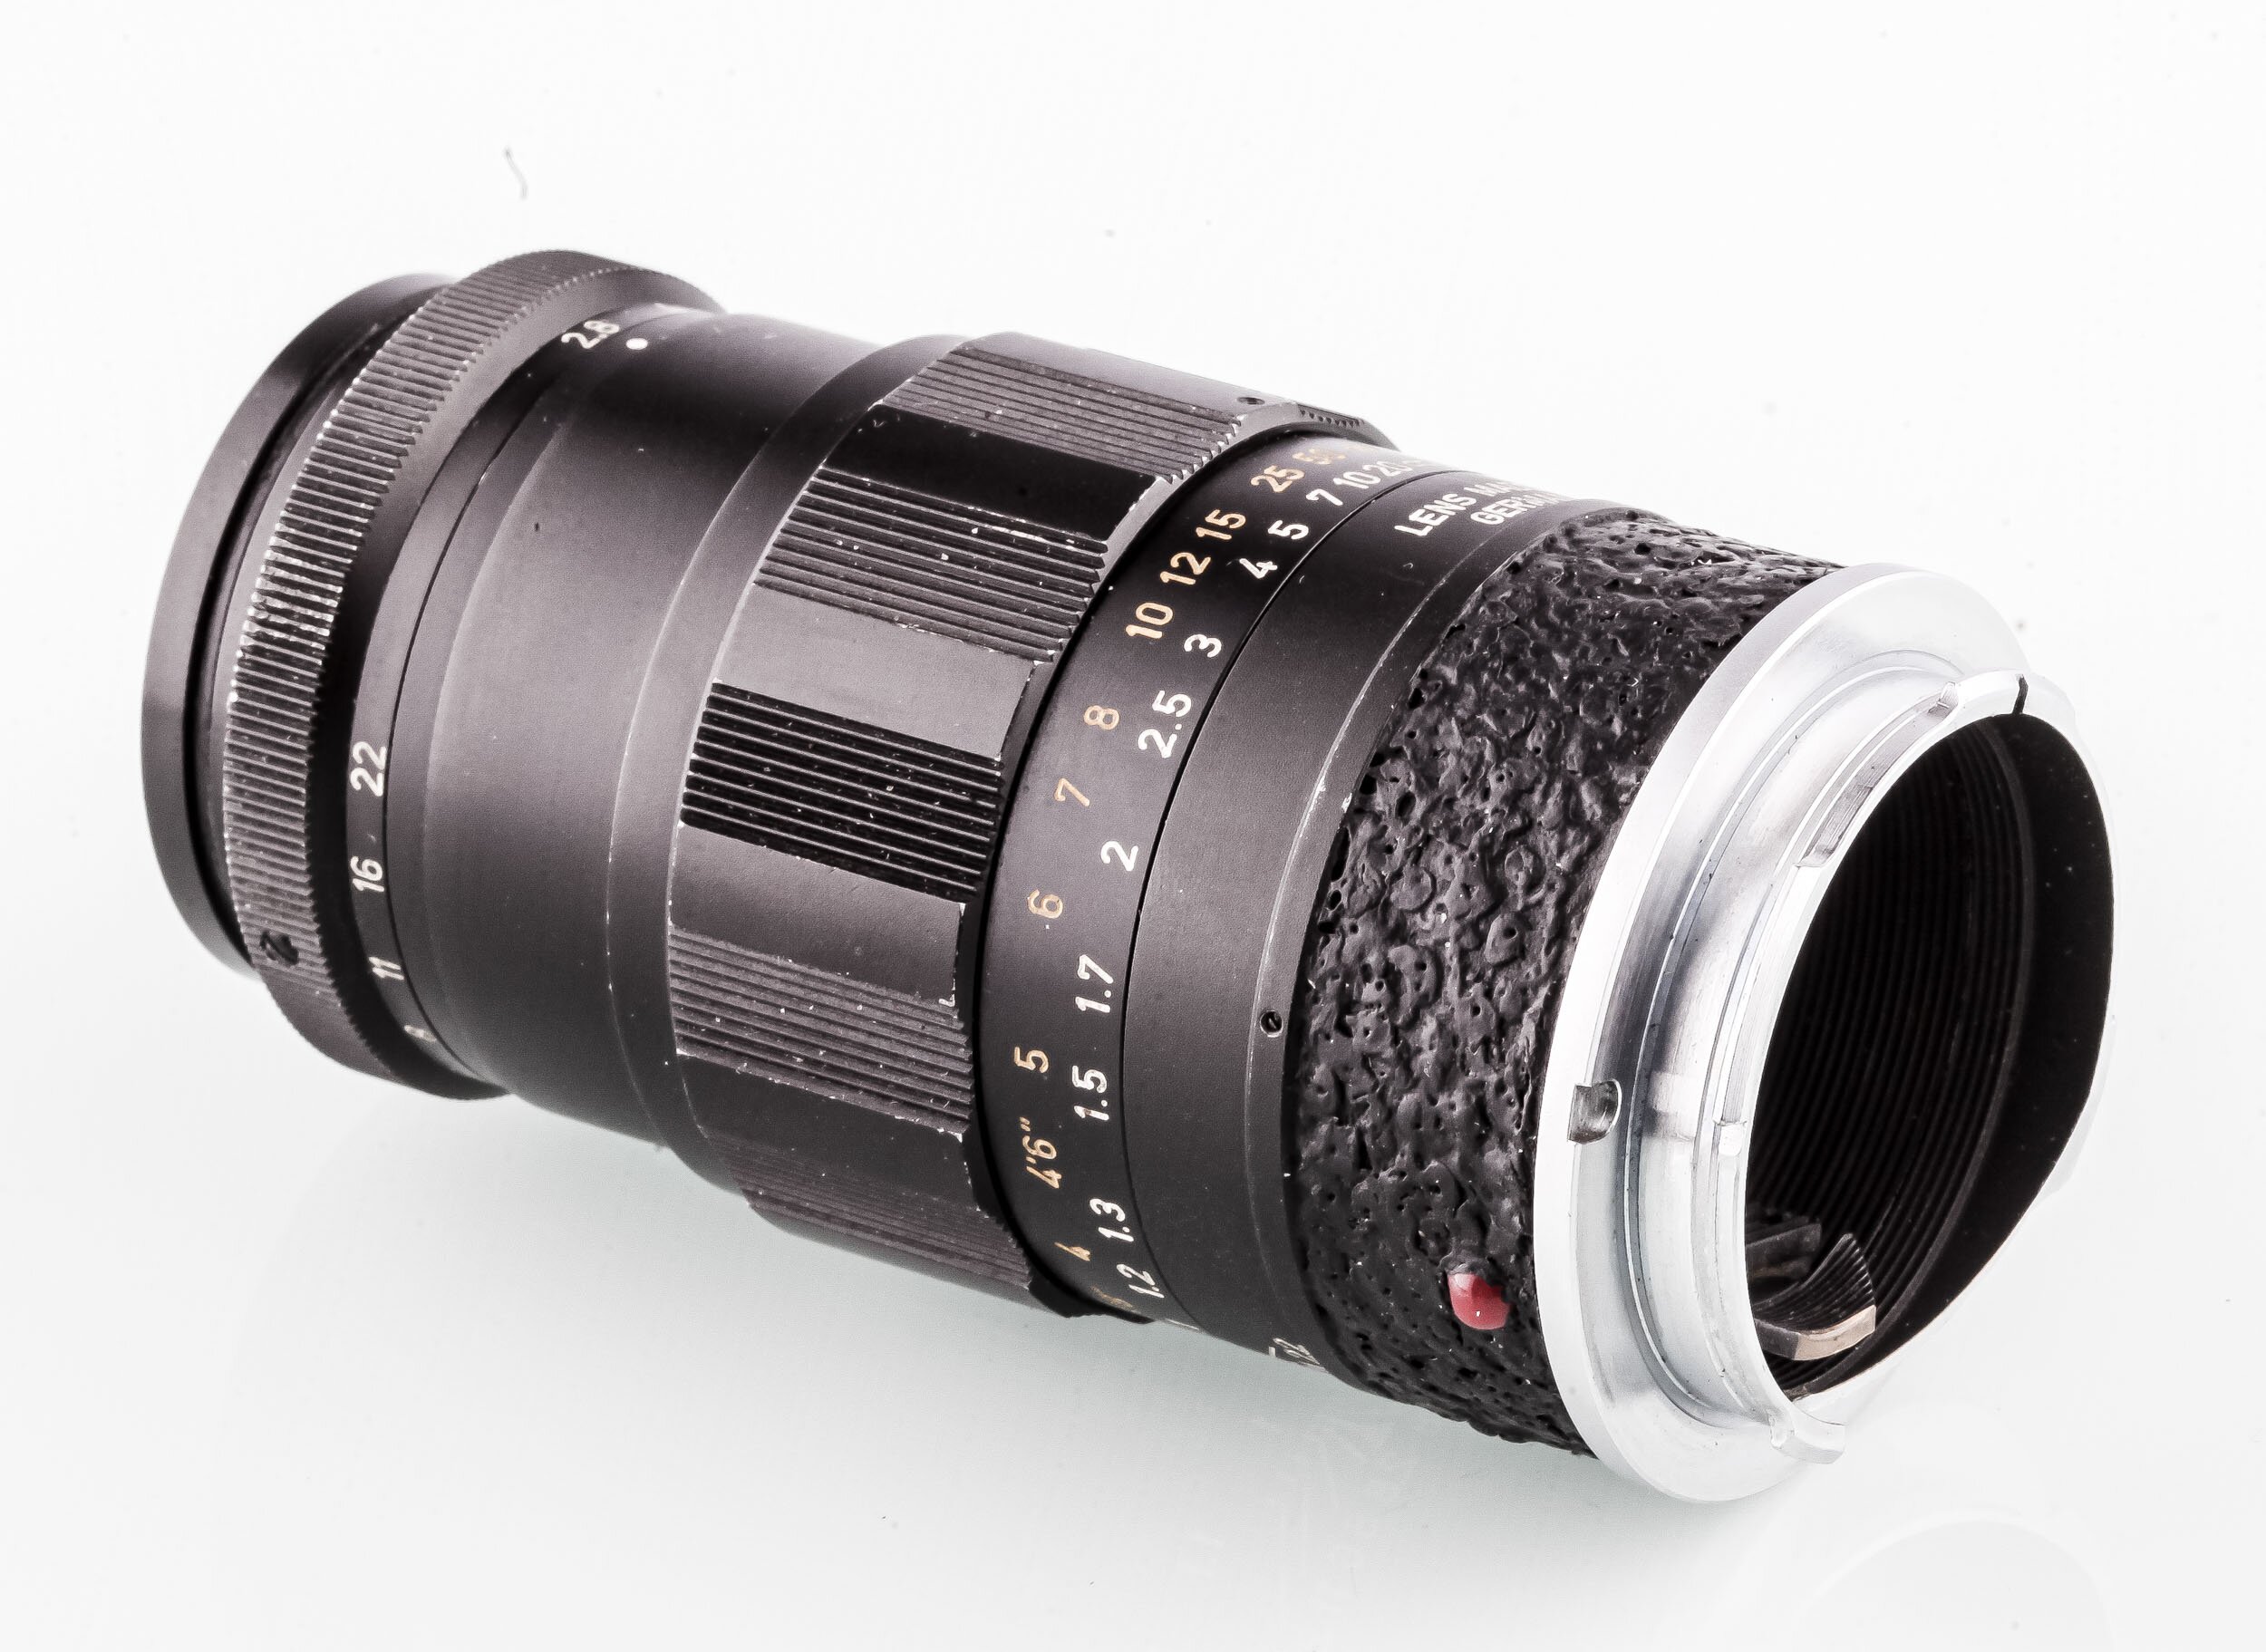 Leica M Elmarit 90mm F2.8 schwarz